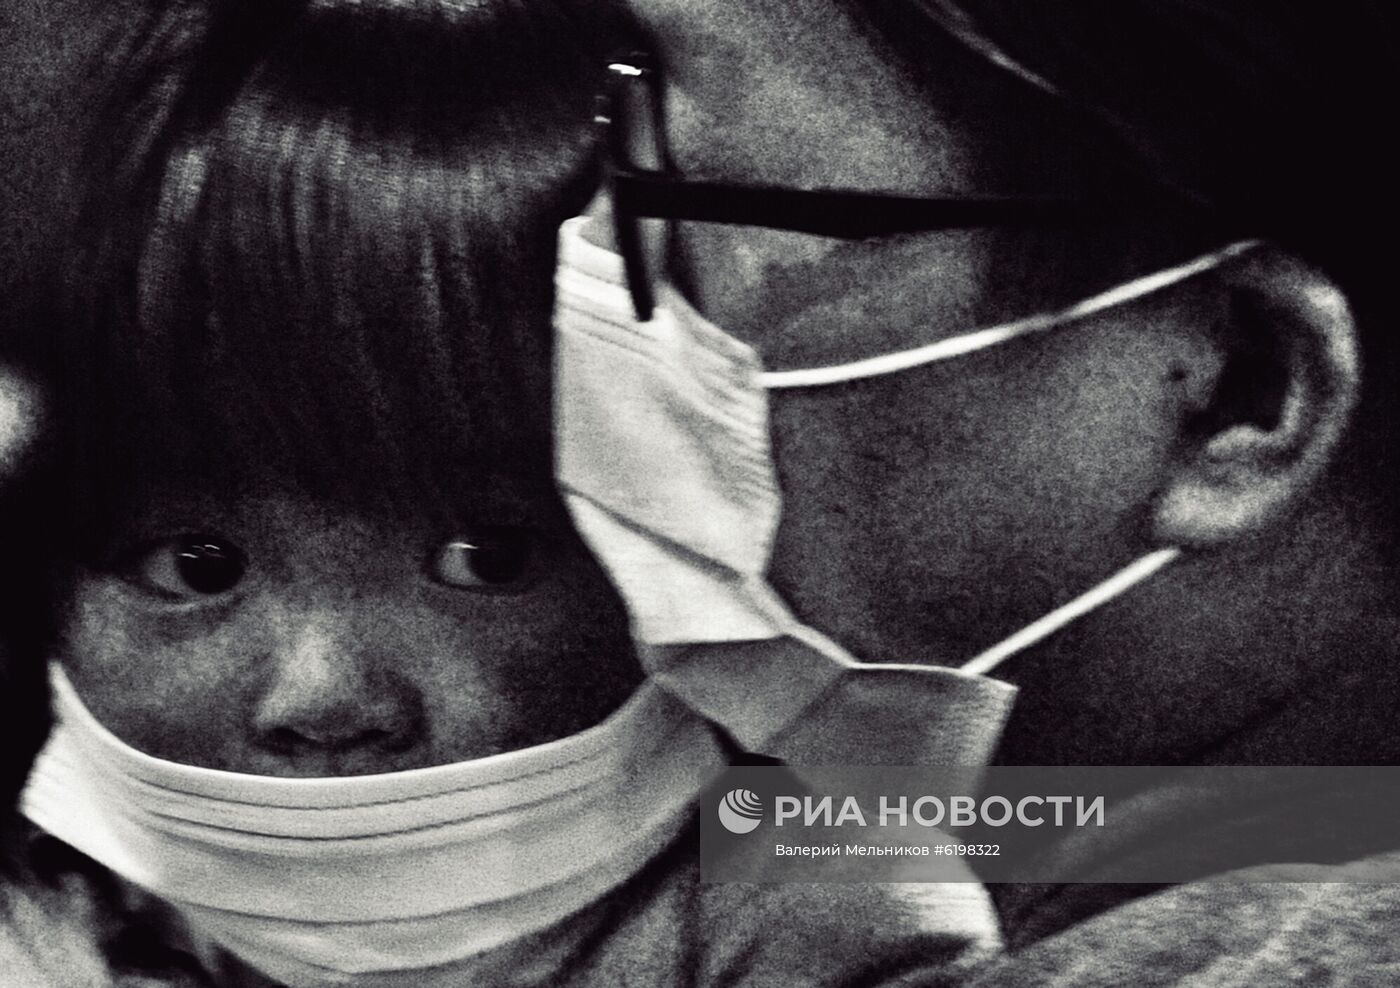 Пассажиры в медицинских масках в аэропорту Шереметьево